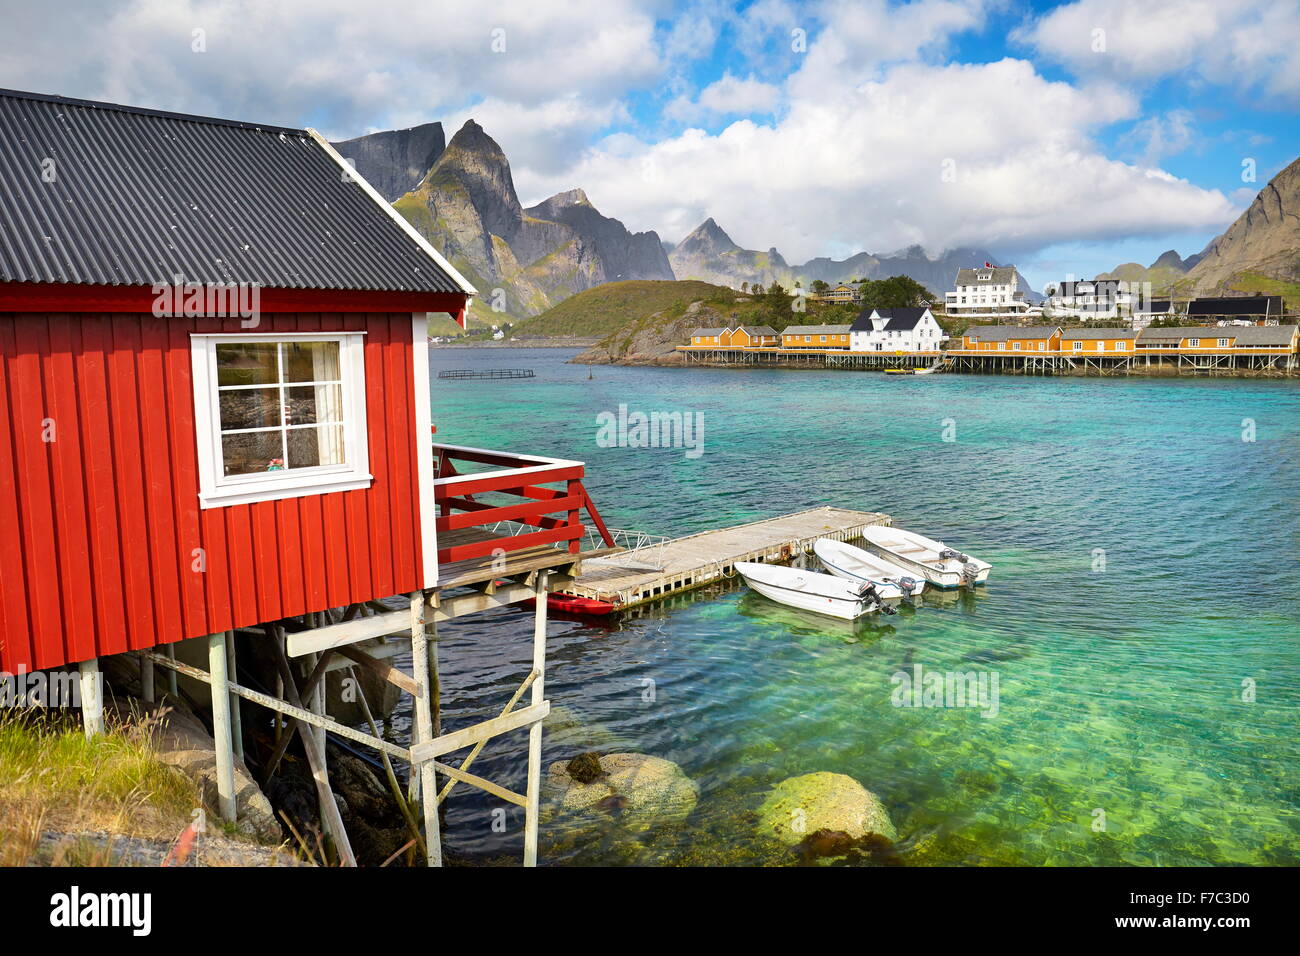 Isole Lofoten, rosso tradizionale di pescatori di capanne Rorbu, Norvegia Foto Stock